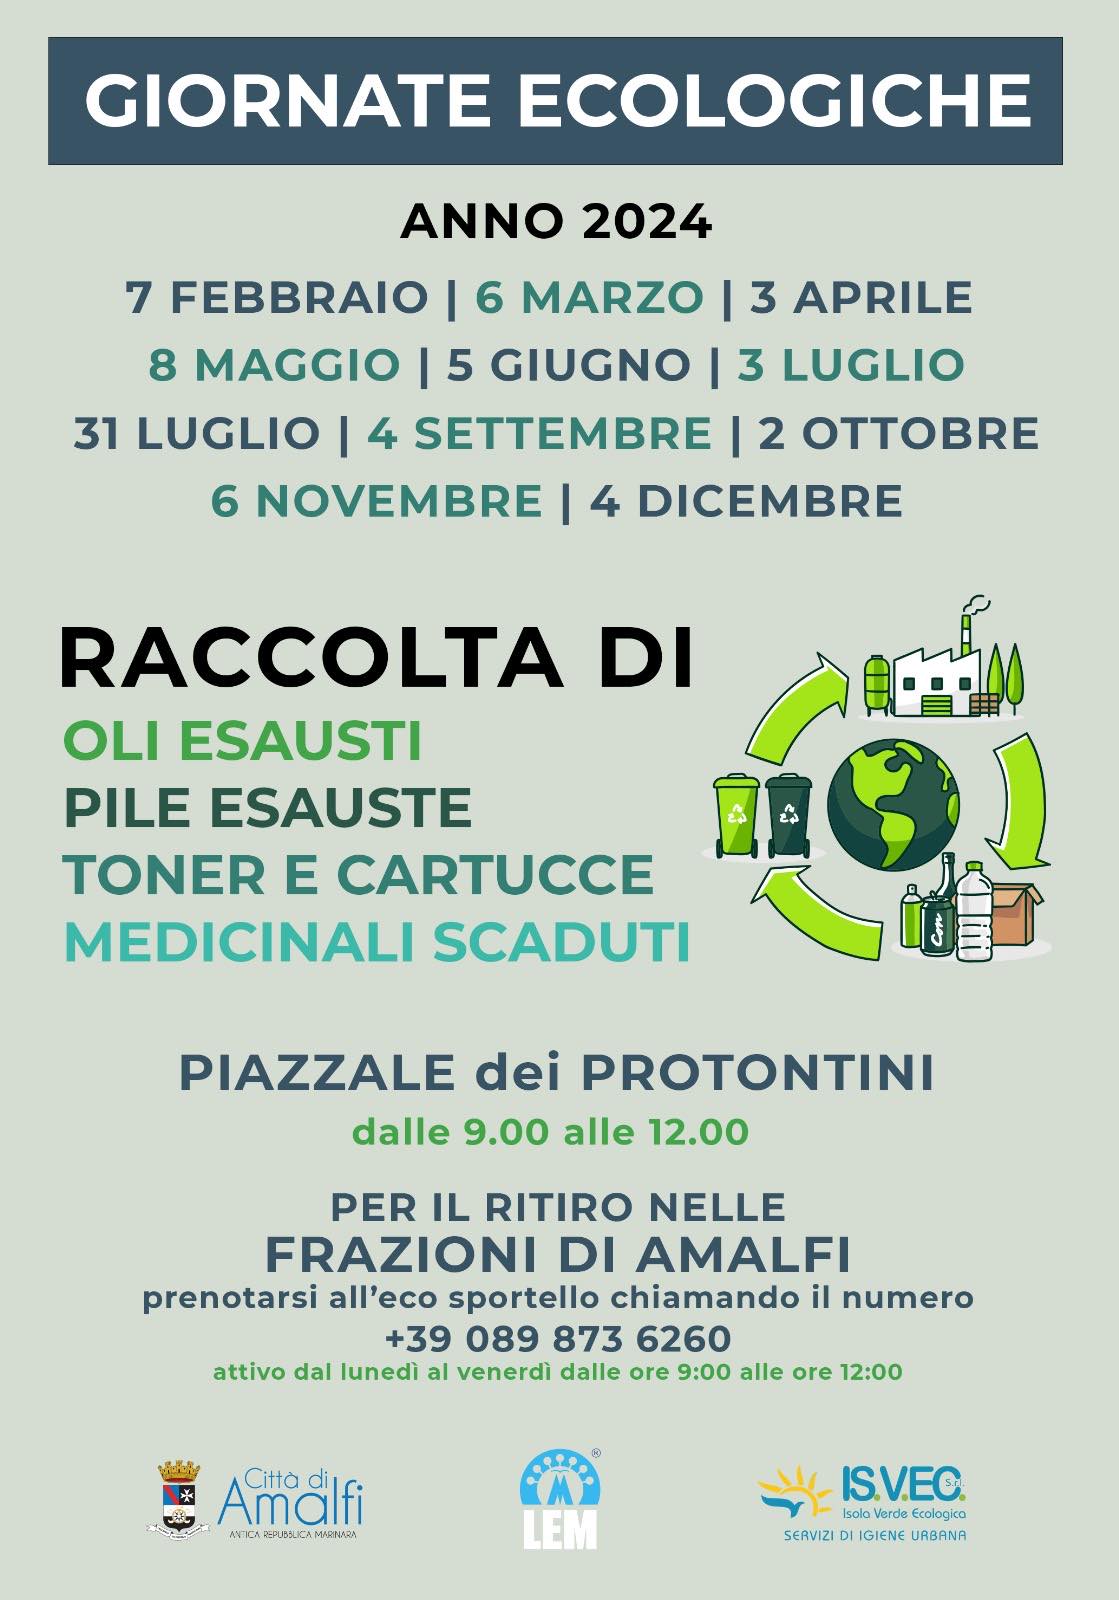 Amalfi: Giornate Ecologiche, nuovo calendario per raccolta di oli e pile esauste, toner, cartucce e medicinali scaduti